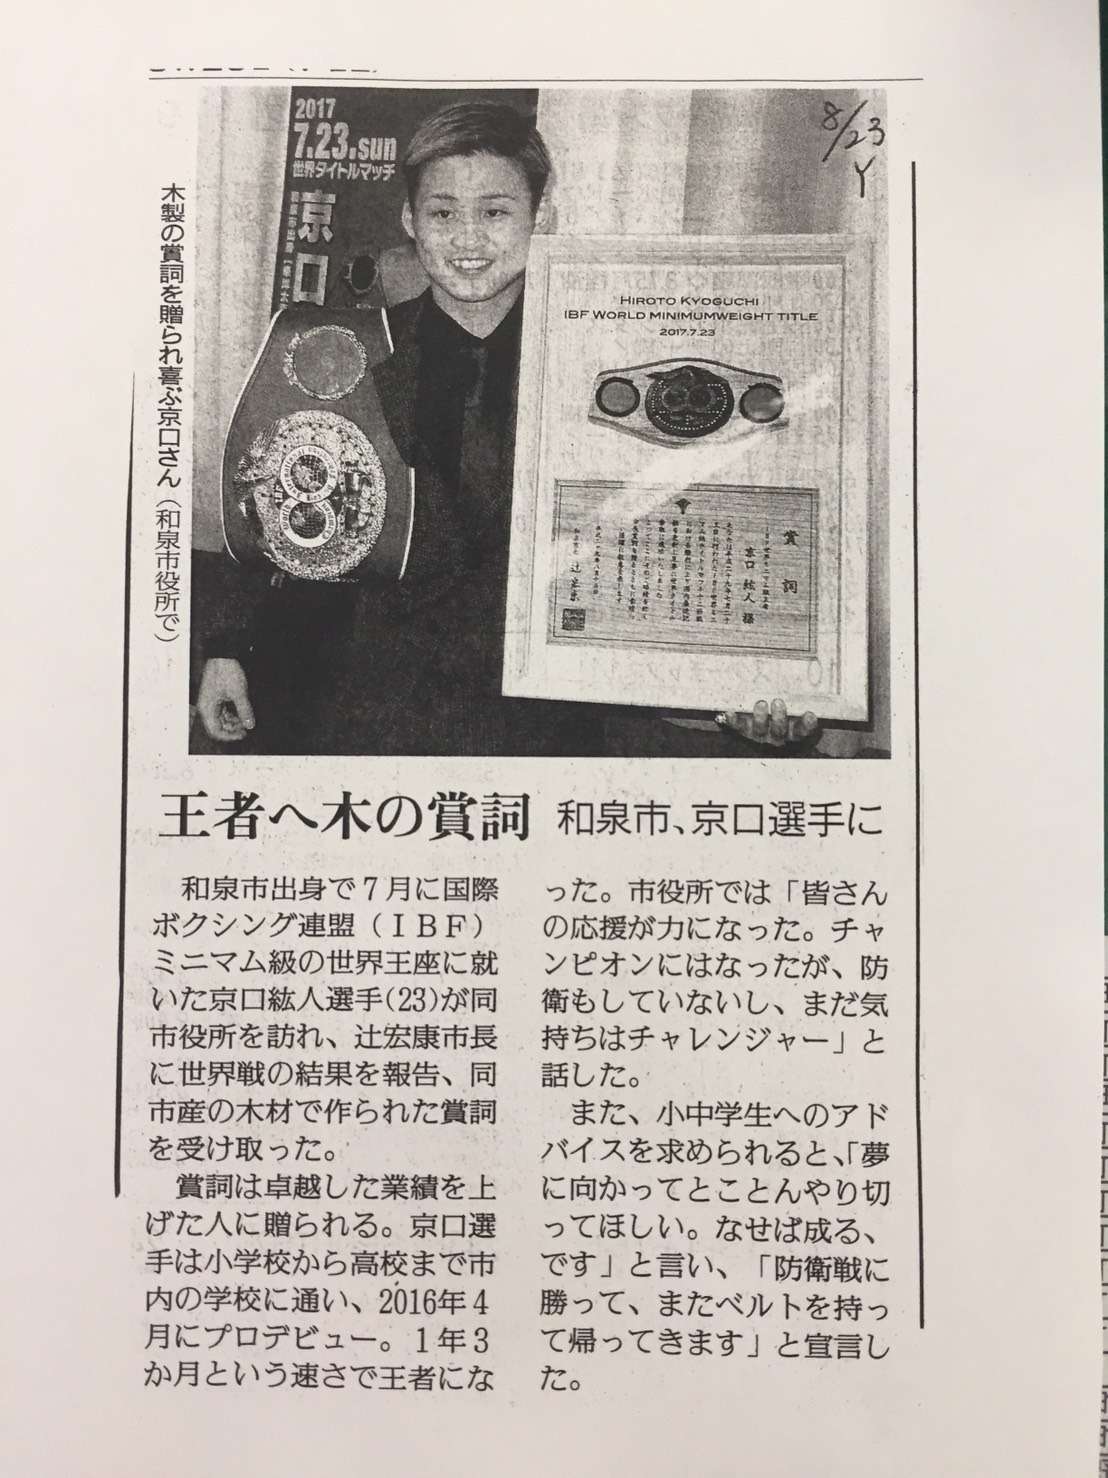 元IBF世界ミニマム級王者　京口 紘人選手の賞詞を製作しました。